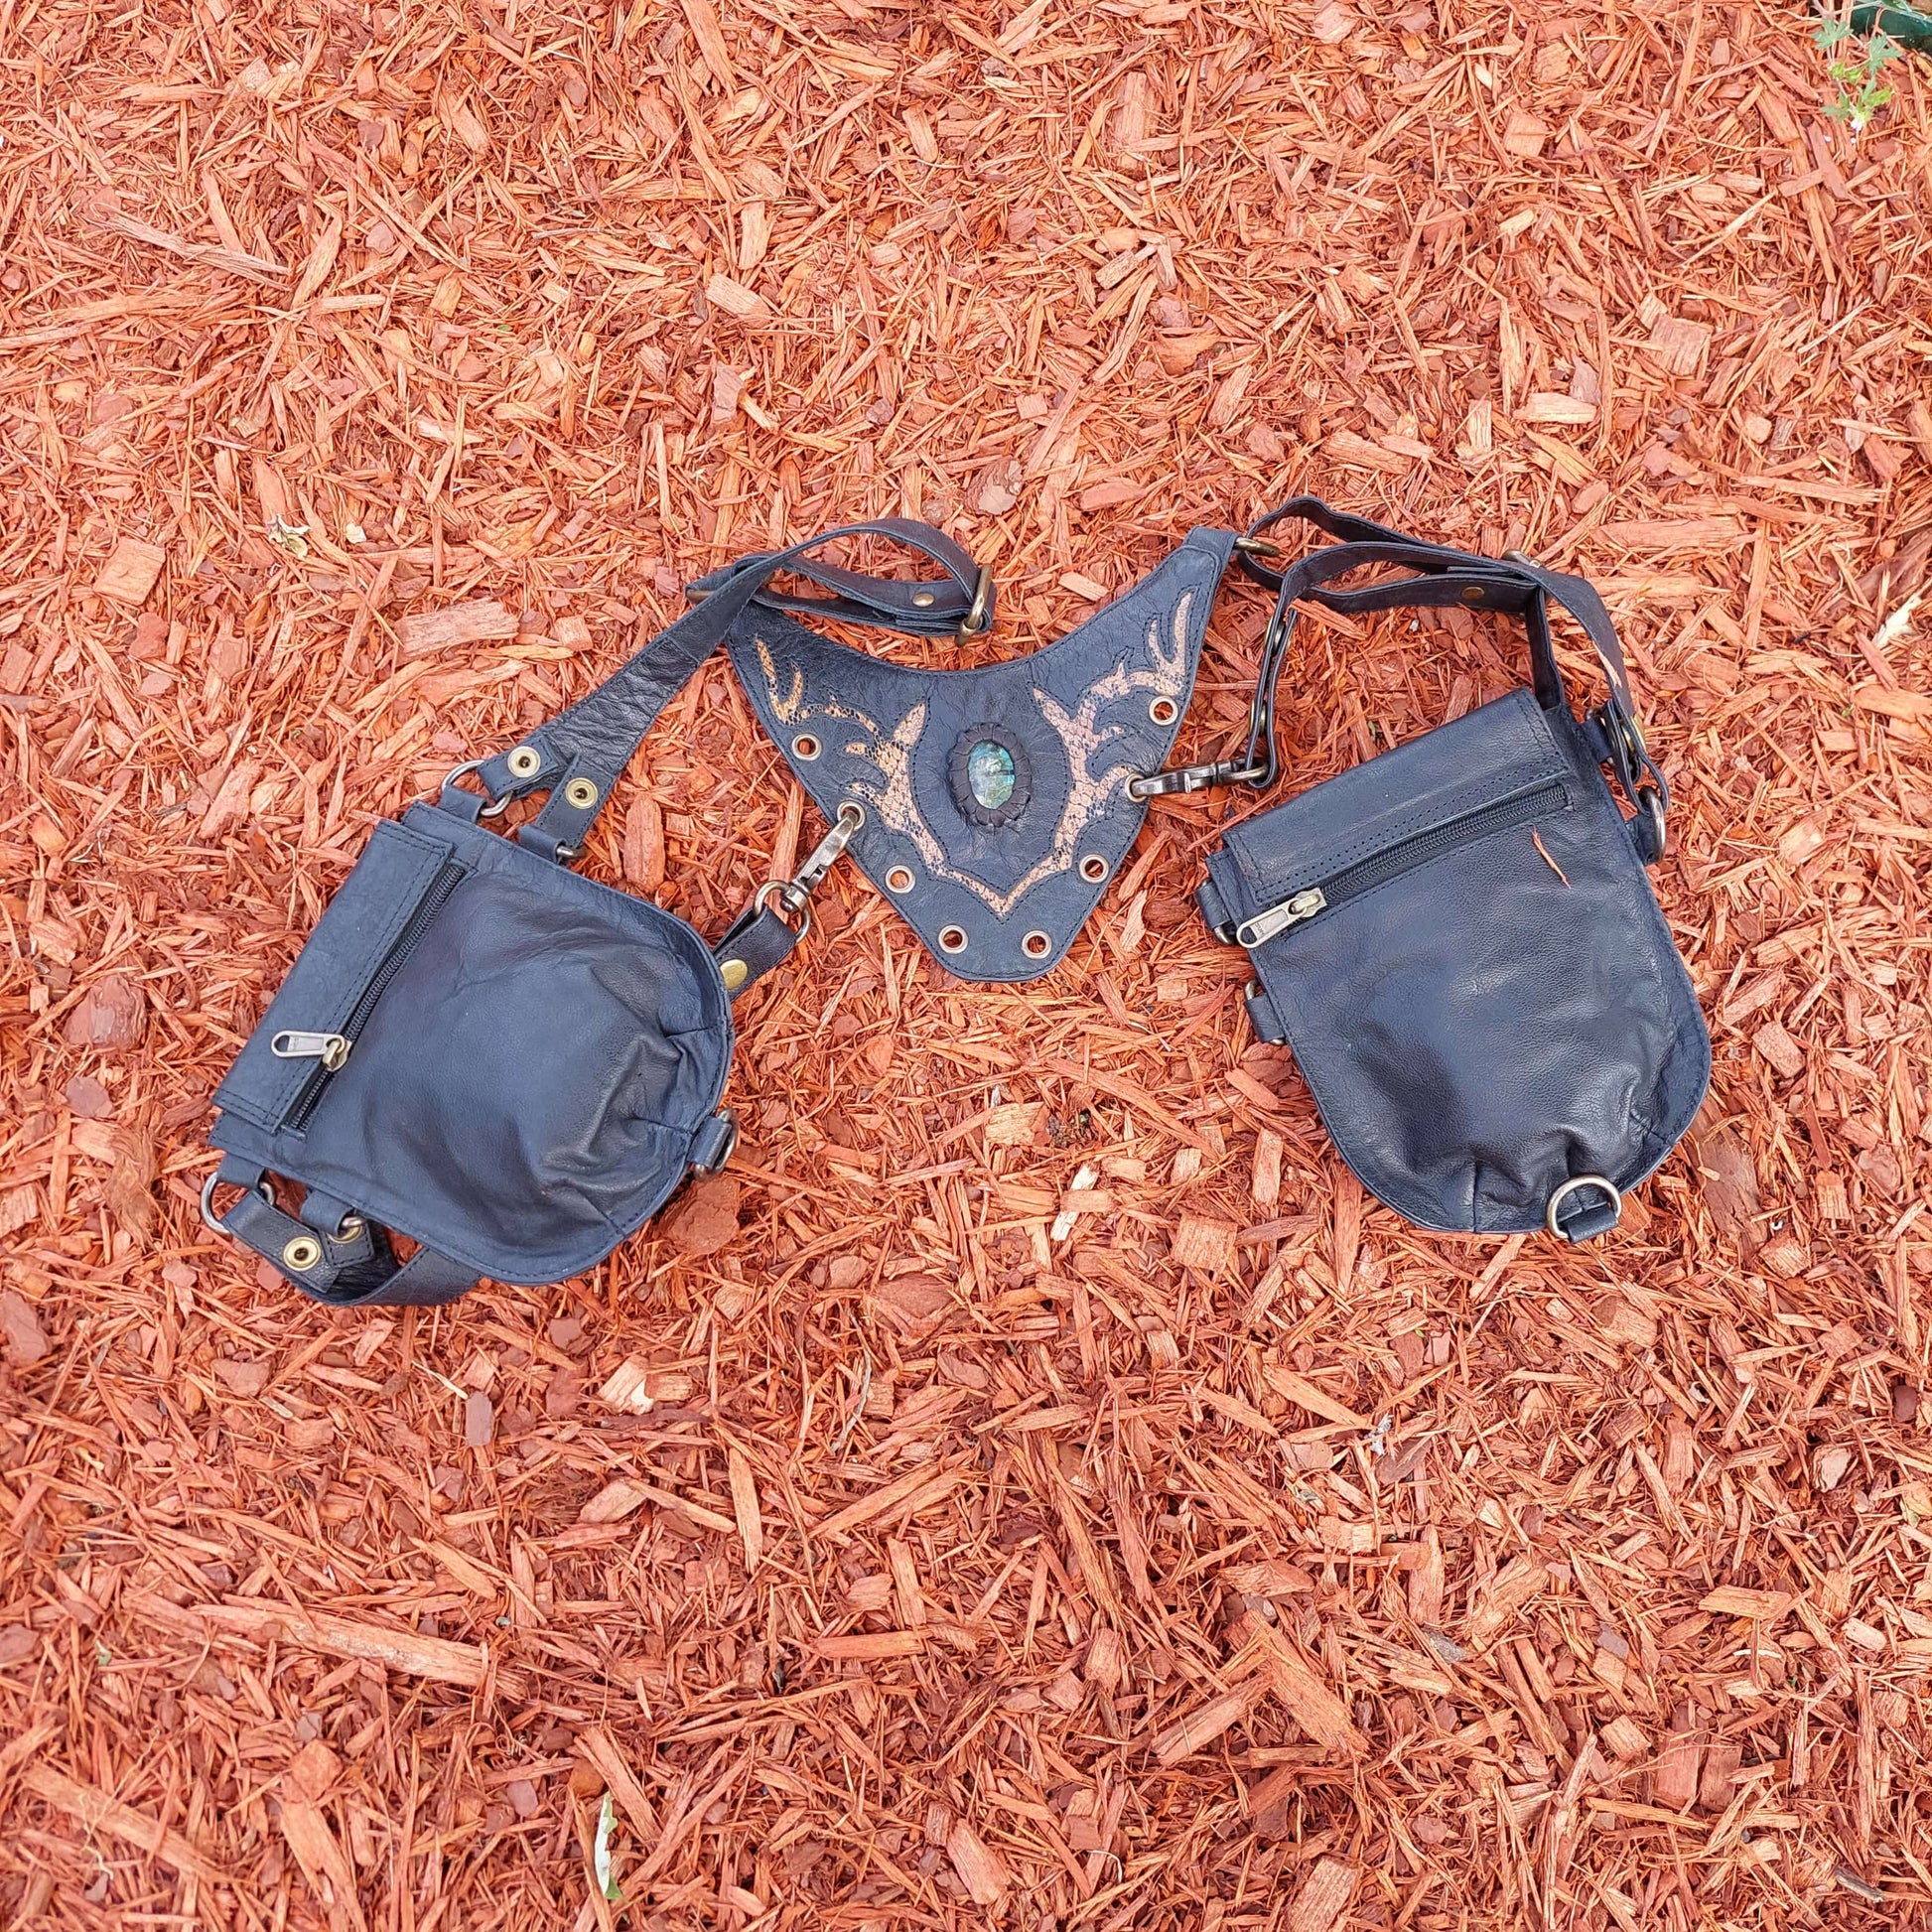 Burning Man Bag, Leather Holster bag, Festival Bag, Utility Harness Ba